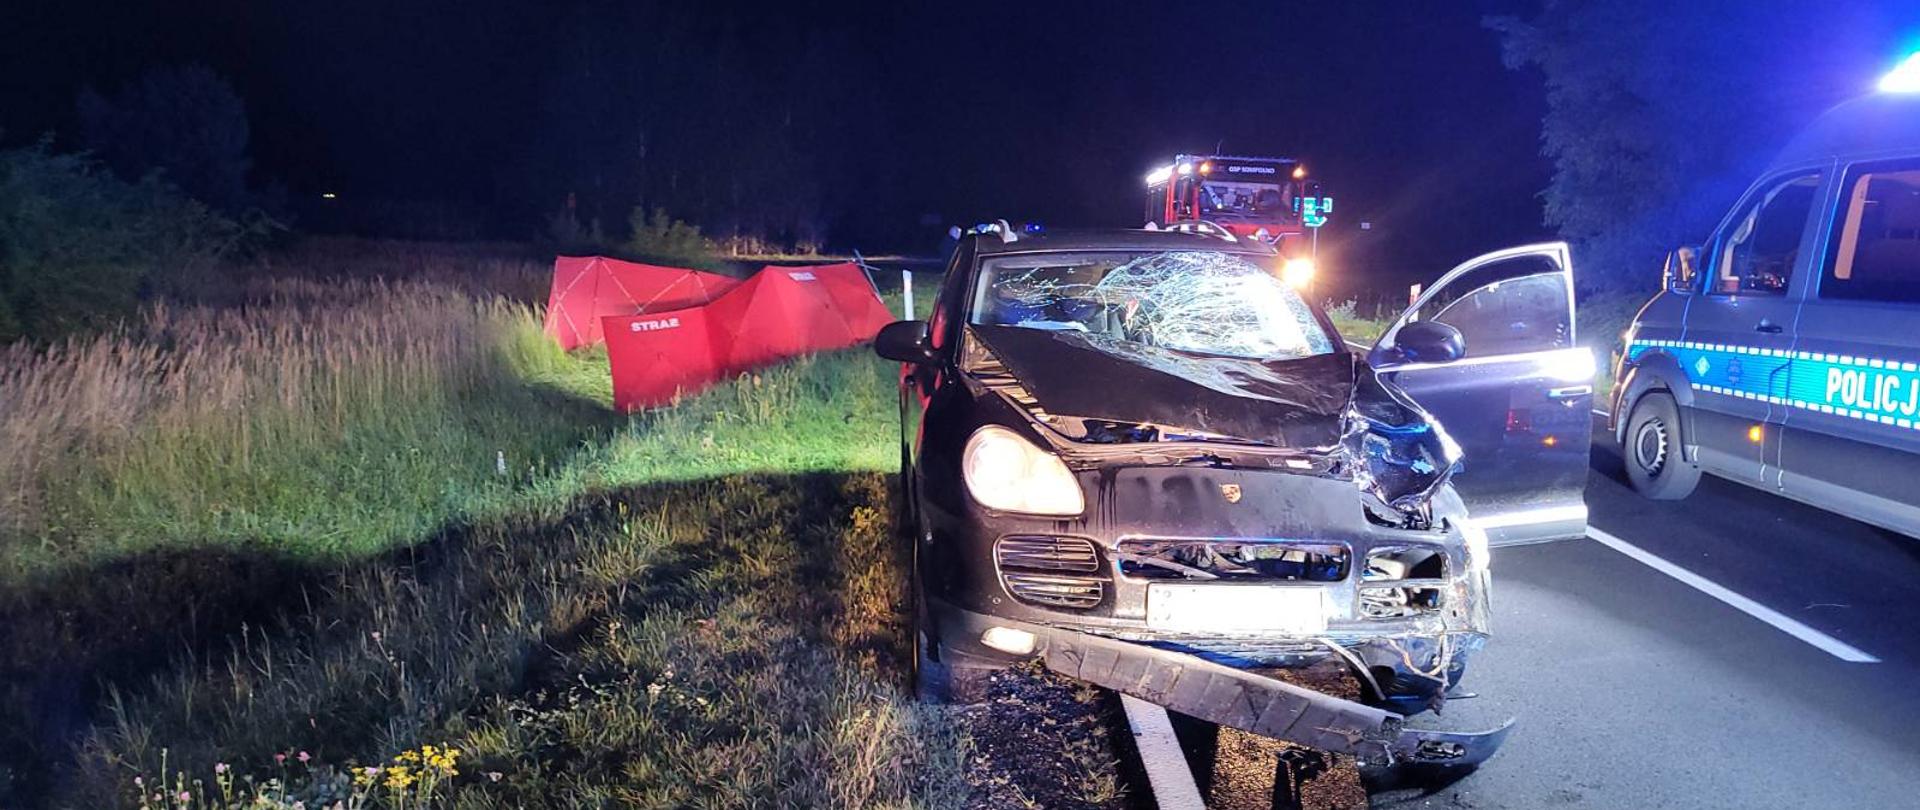 Zdjęcie przedstawia samochód osobowy z uszkodzonym przodem. Zderzak częściowo urwany, zbita przednia szyba, uszkodzony reflektor. Z tyłu auta w przydrożnym rowie rozstawiony parawan strażacki koloru czerwonego. Na zdjęciu widać również samochód strażacki oraz radiowóz. 